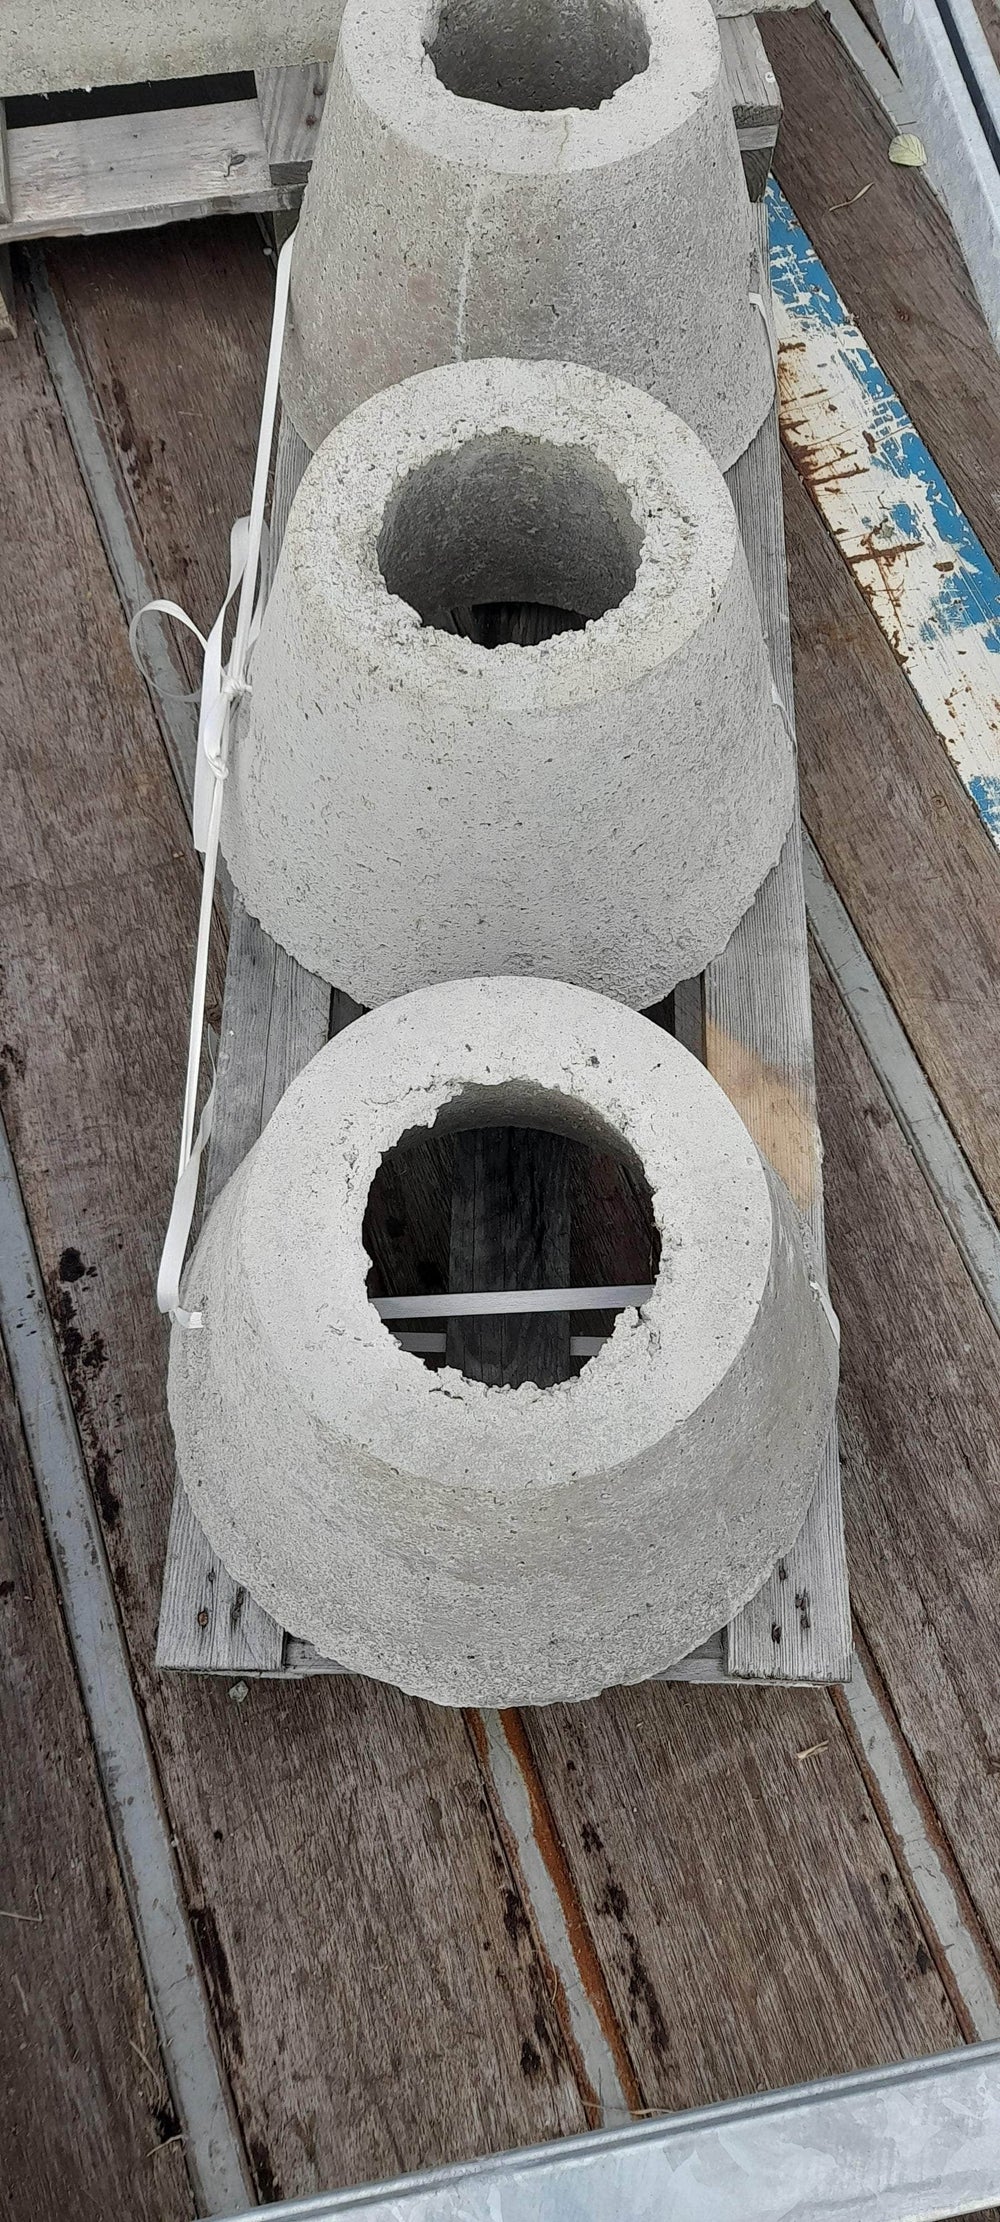 Extérieurs / VRD (réemploi)  -  Plot béton brut en forme conique, diamètre 40cm (réemploi)